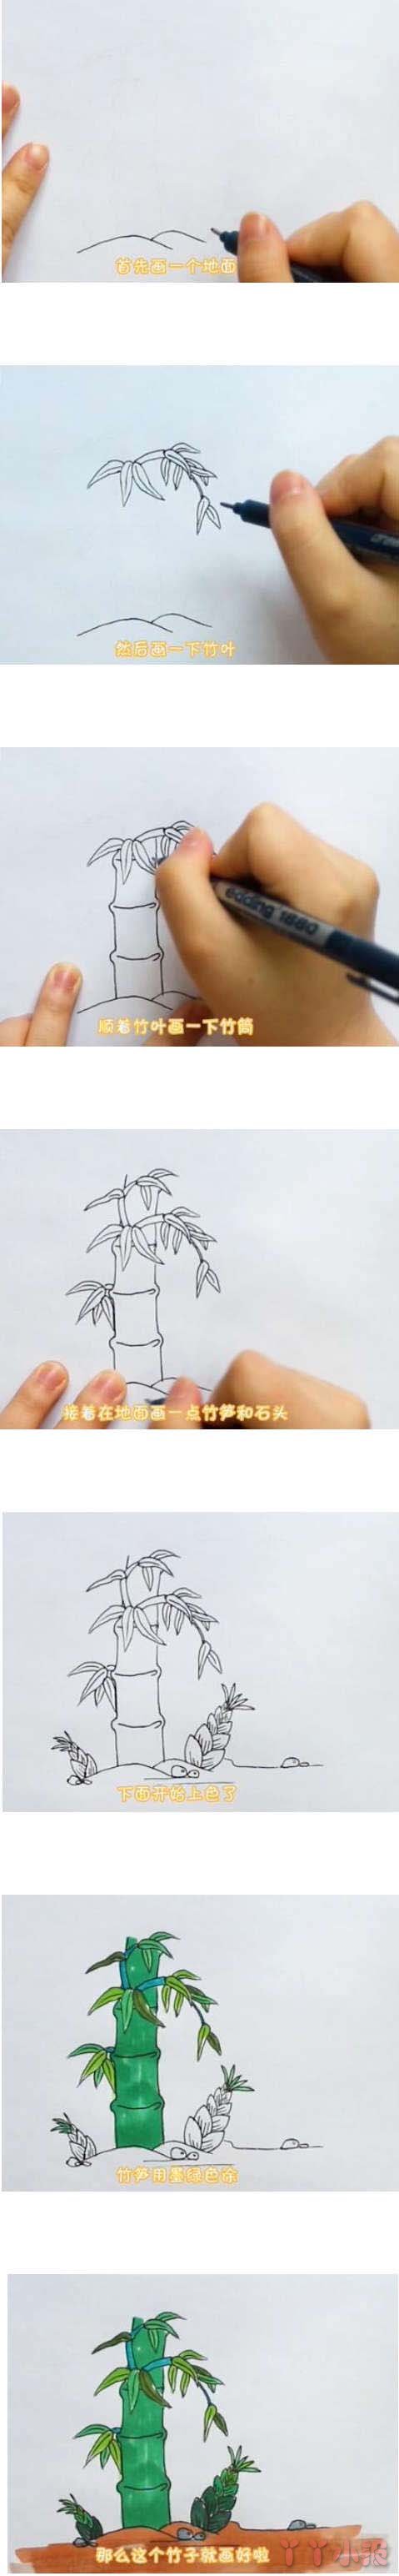 教你一步一步画彩色竹子简笔画手绘简单漂亮